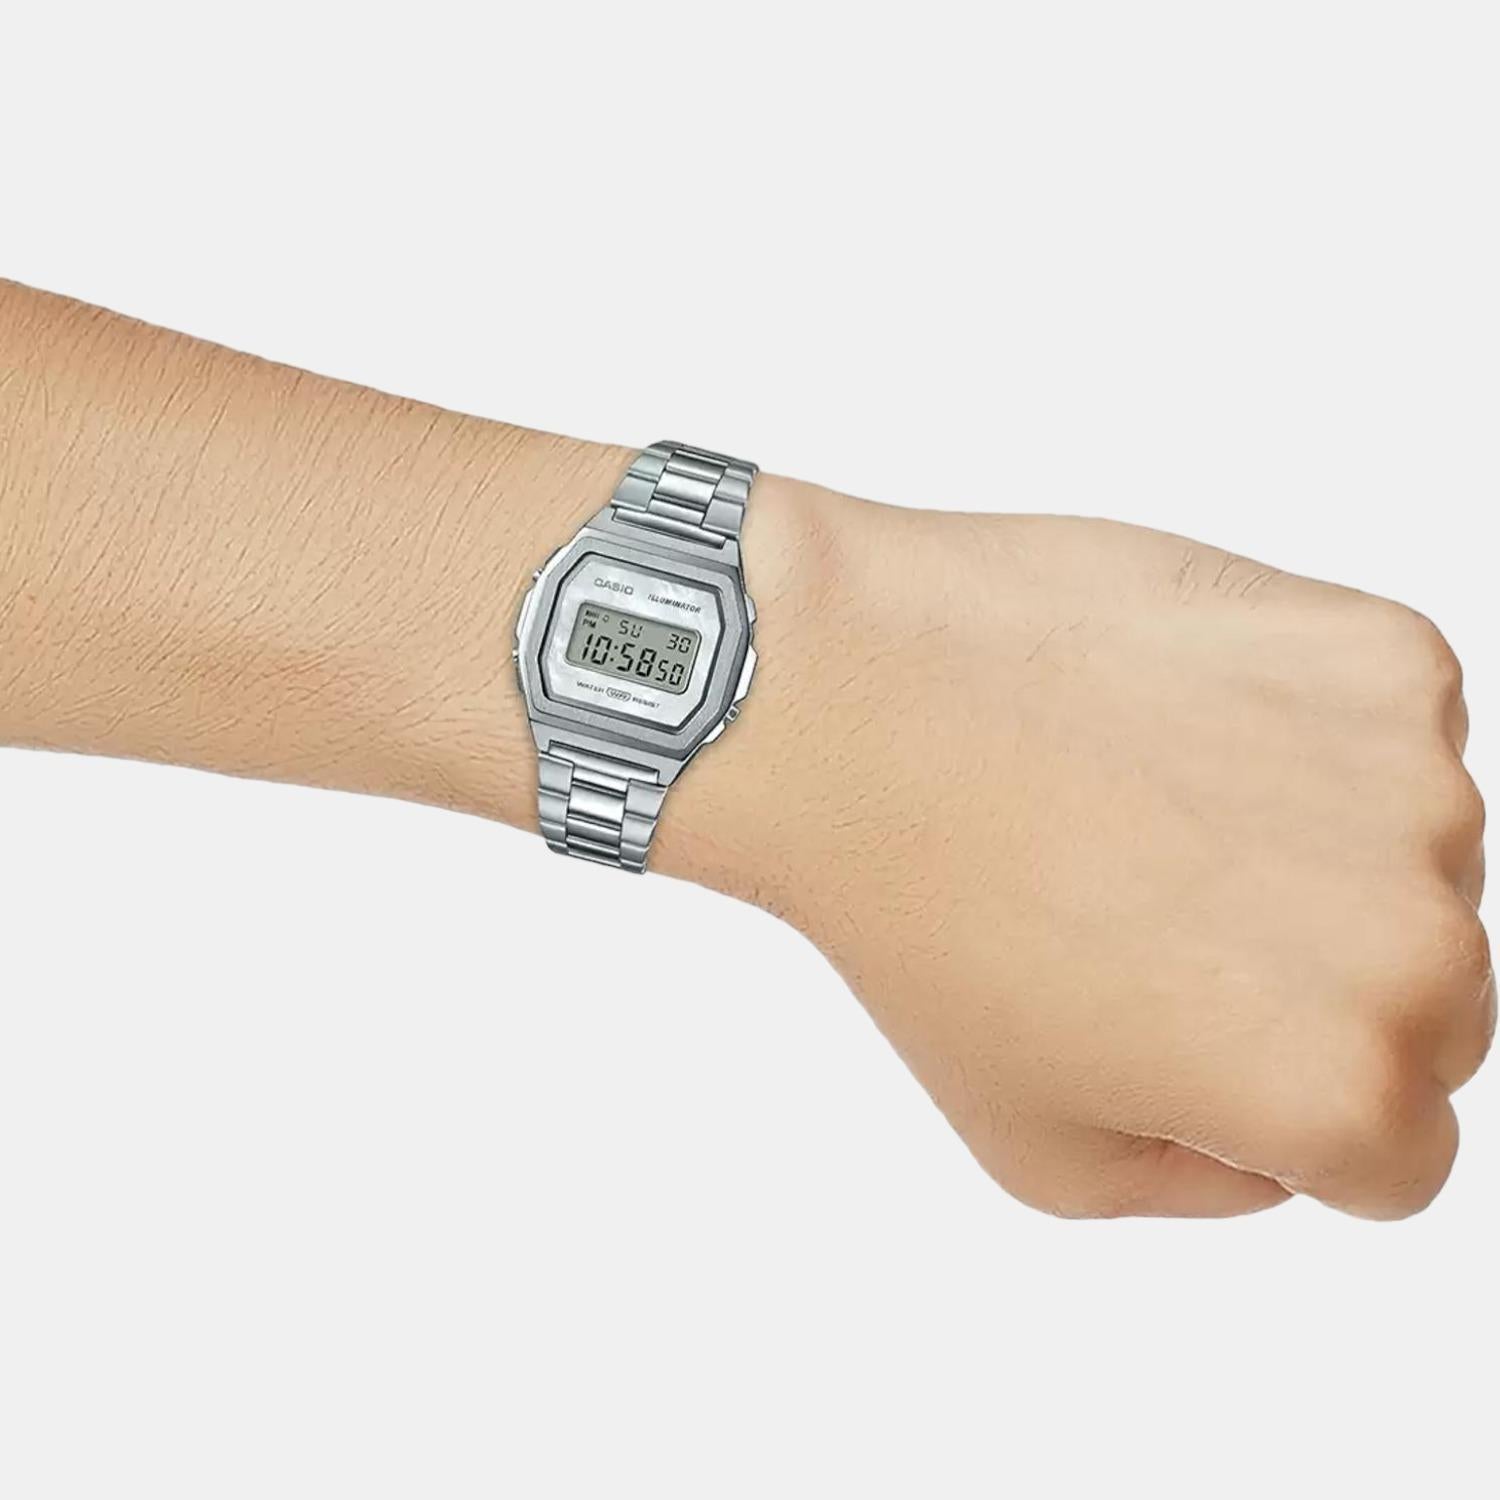 casio-stainless-steel-silver-digital-unisex-watch-d193